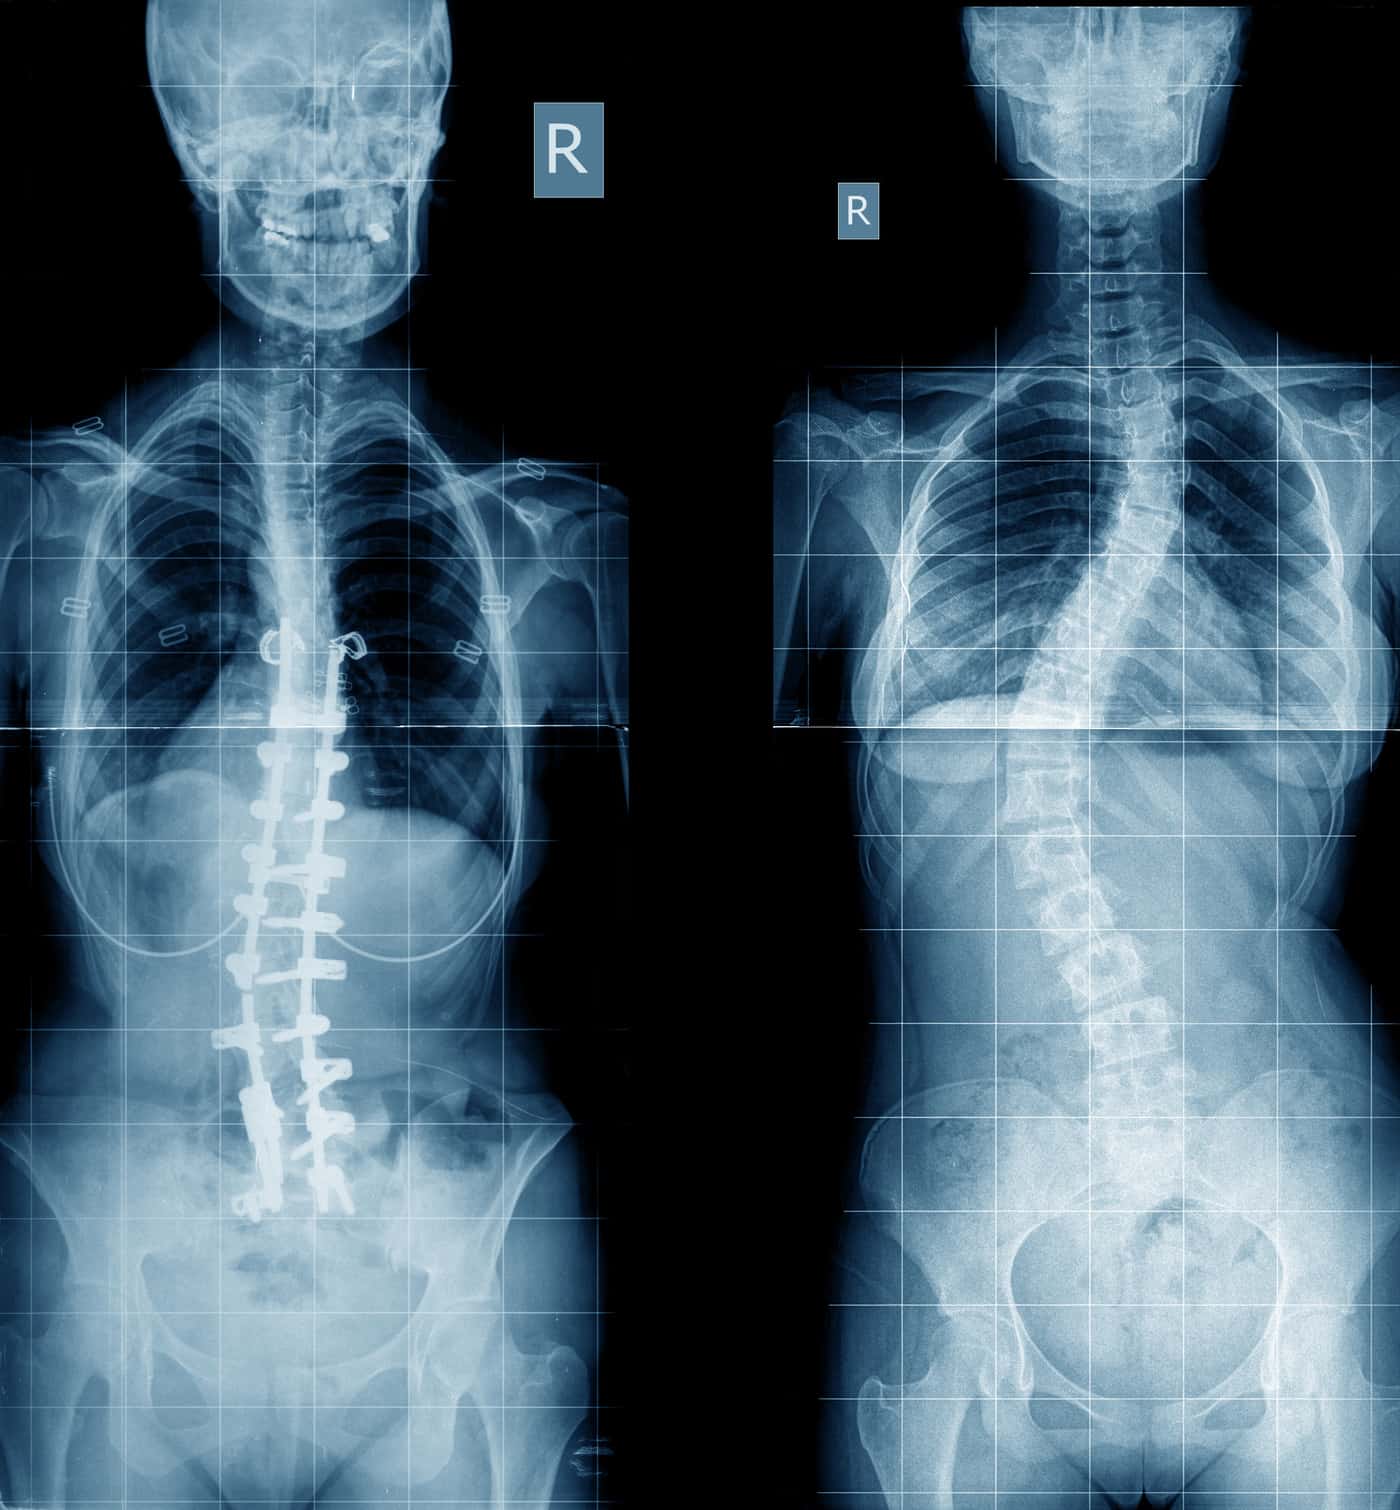 penyakit skoliosis adalah kelaianan tulang belakang yang melengkung ke samping